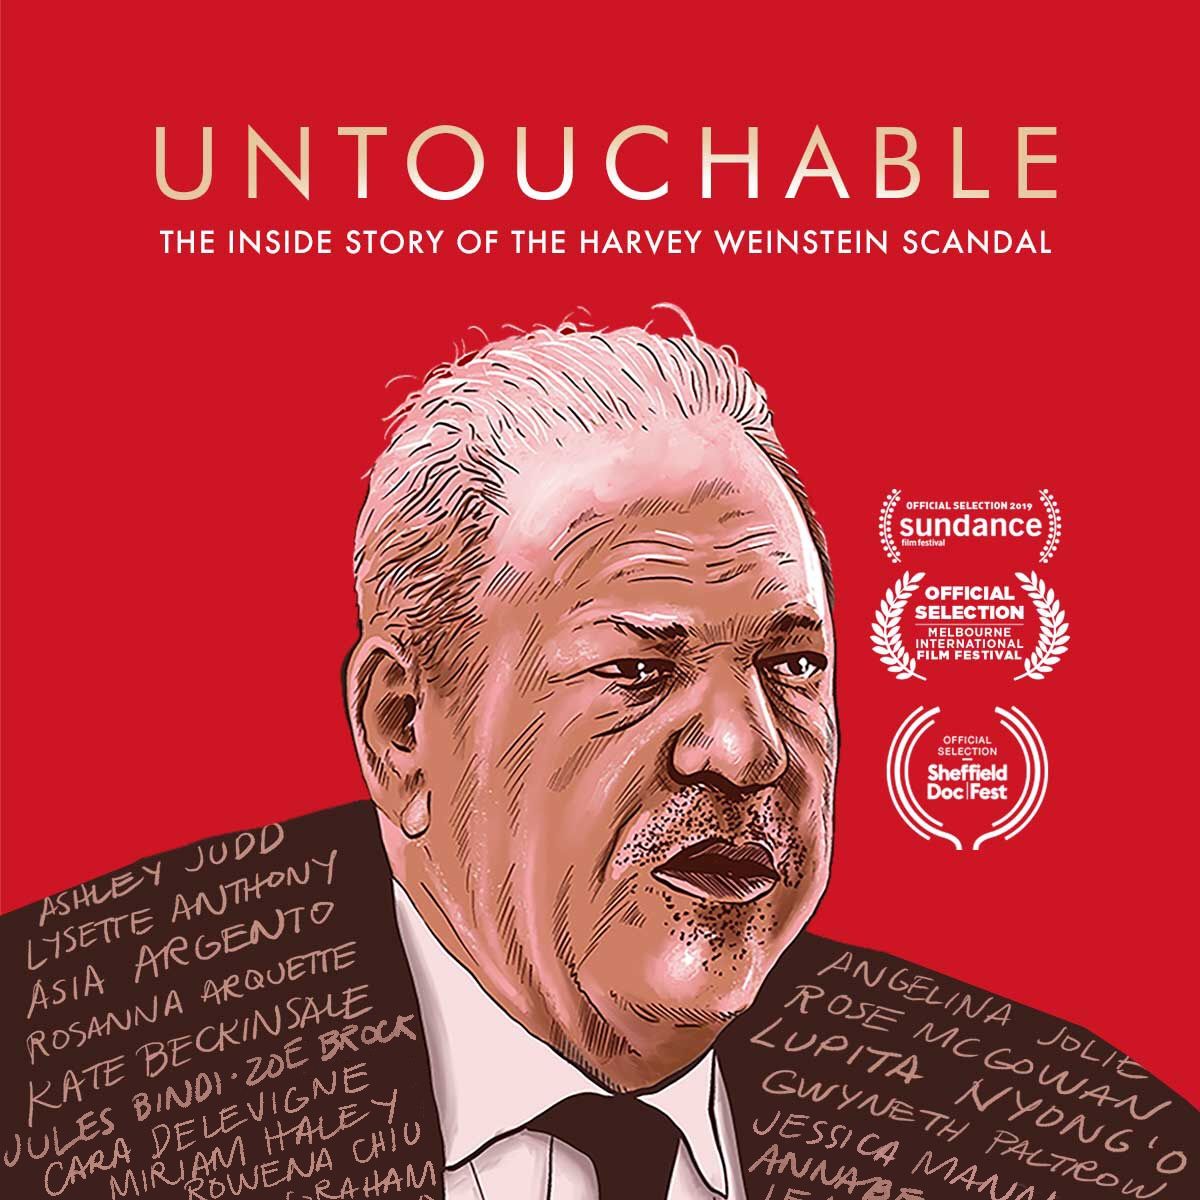 Harvey Weinstein trial starts: Watch Untouchable on iwonder